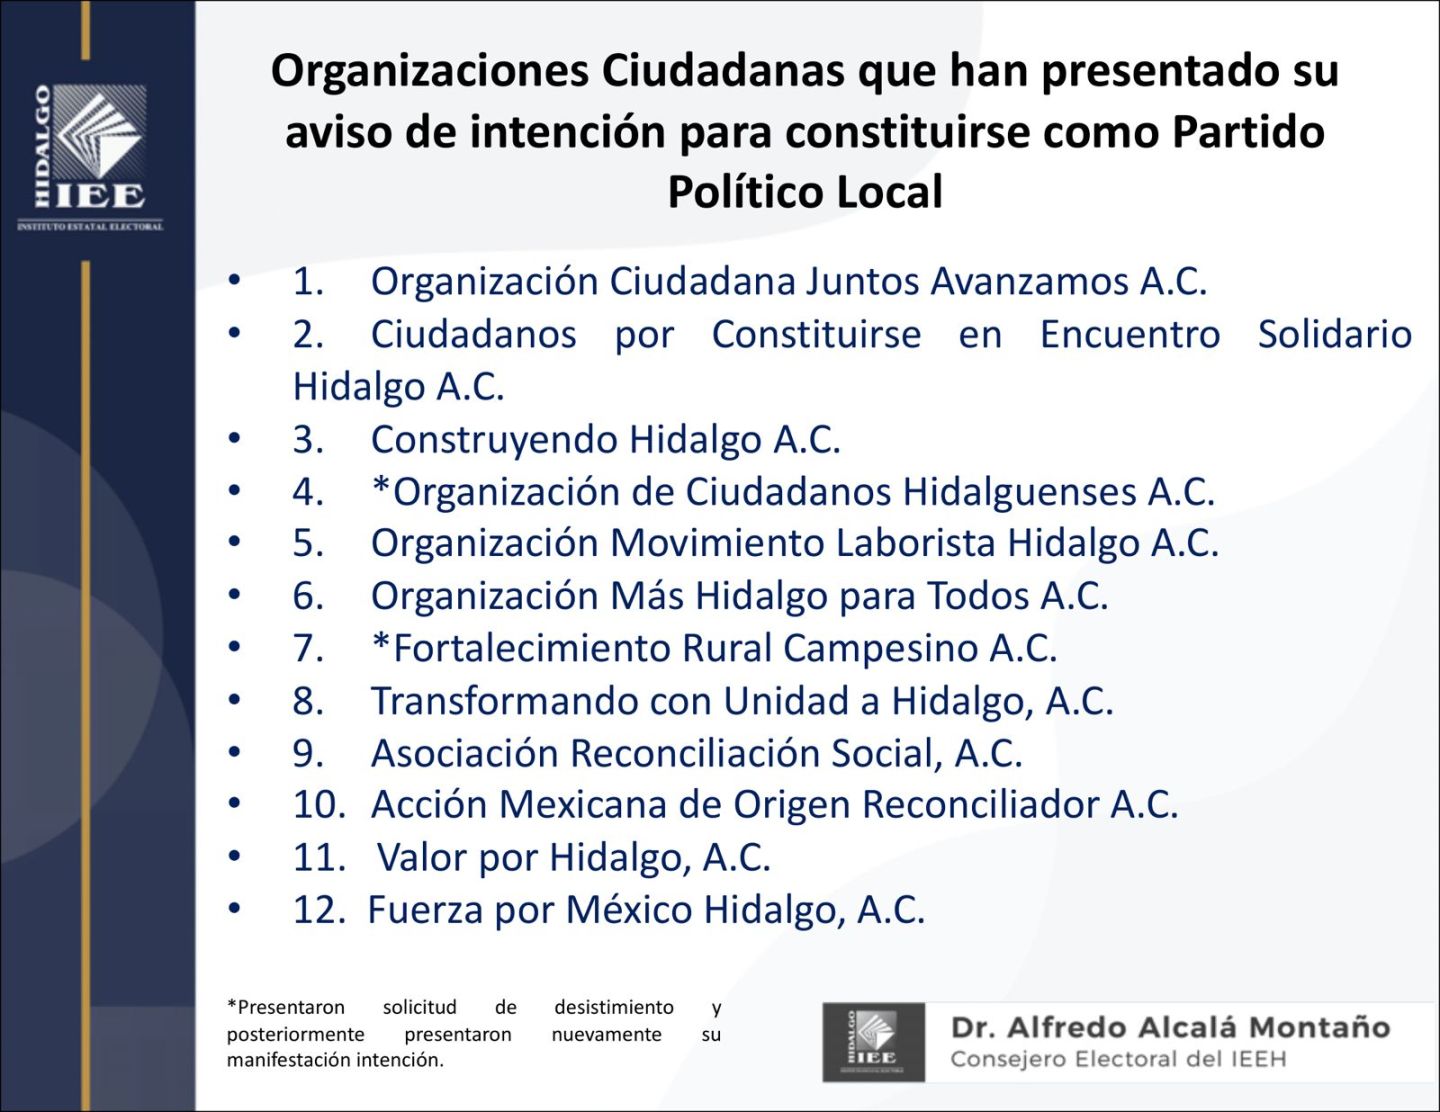 Doce organizaciones quieren ser partidos locales: Alcalá Montaño 